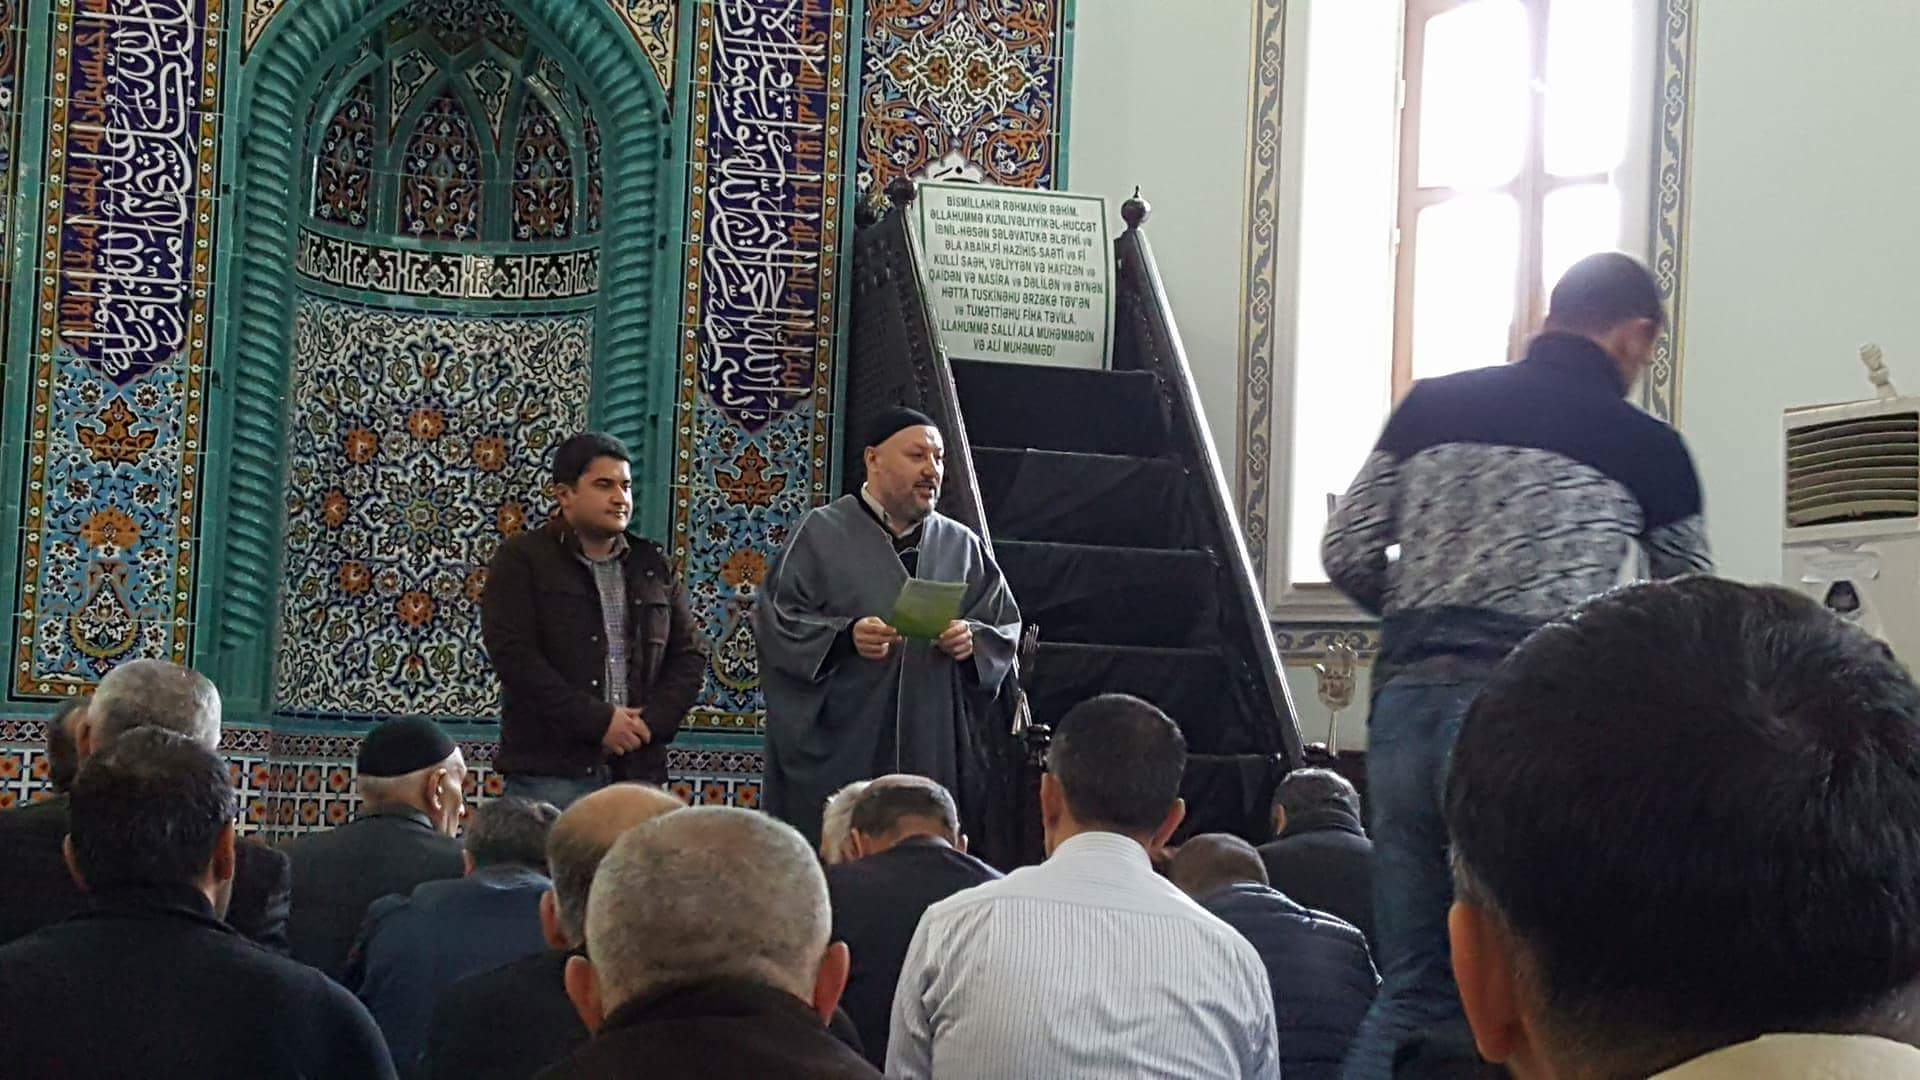 Der Soziologe Javid Shahmaliyev steht während des muslimischen Gebets in einer lokalen Moschee neben dem Imam; Quelle: privat